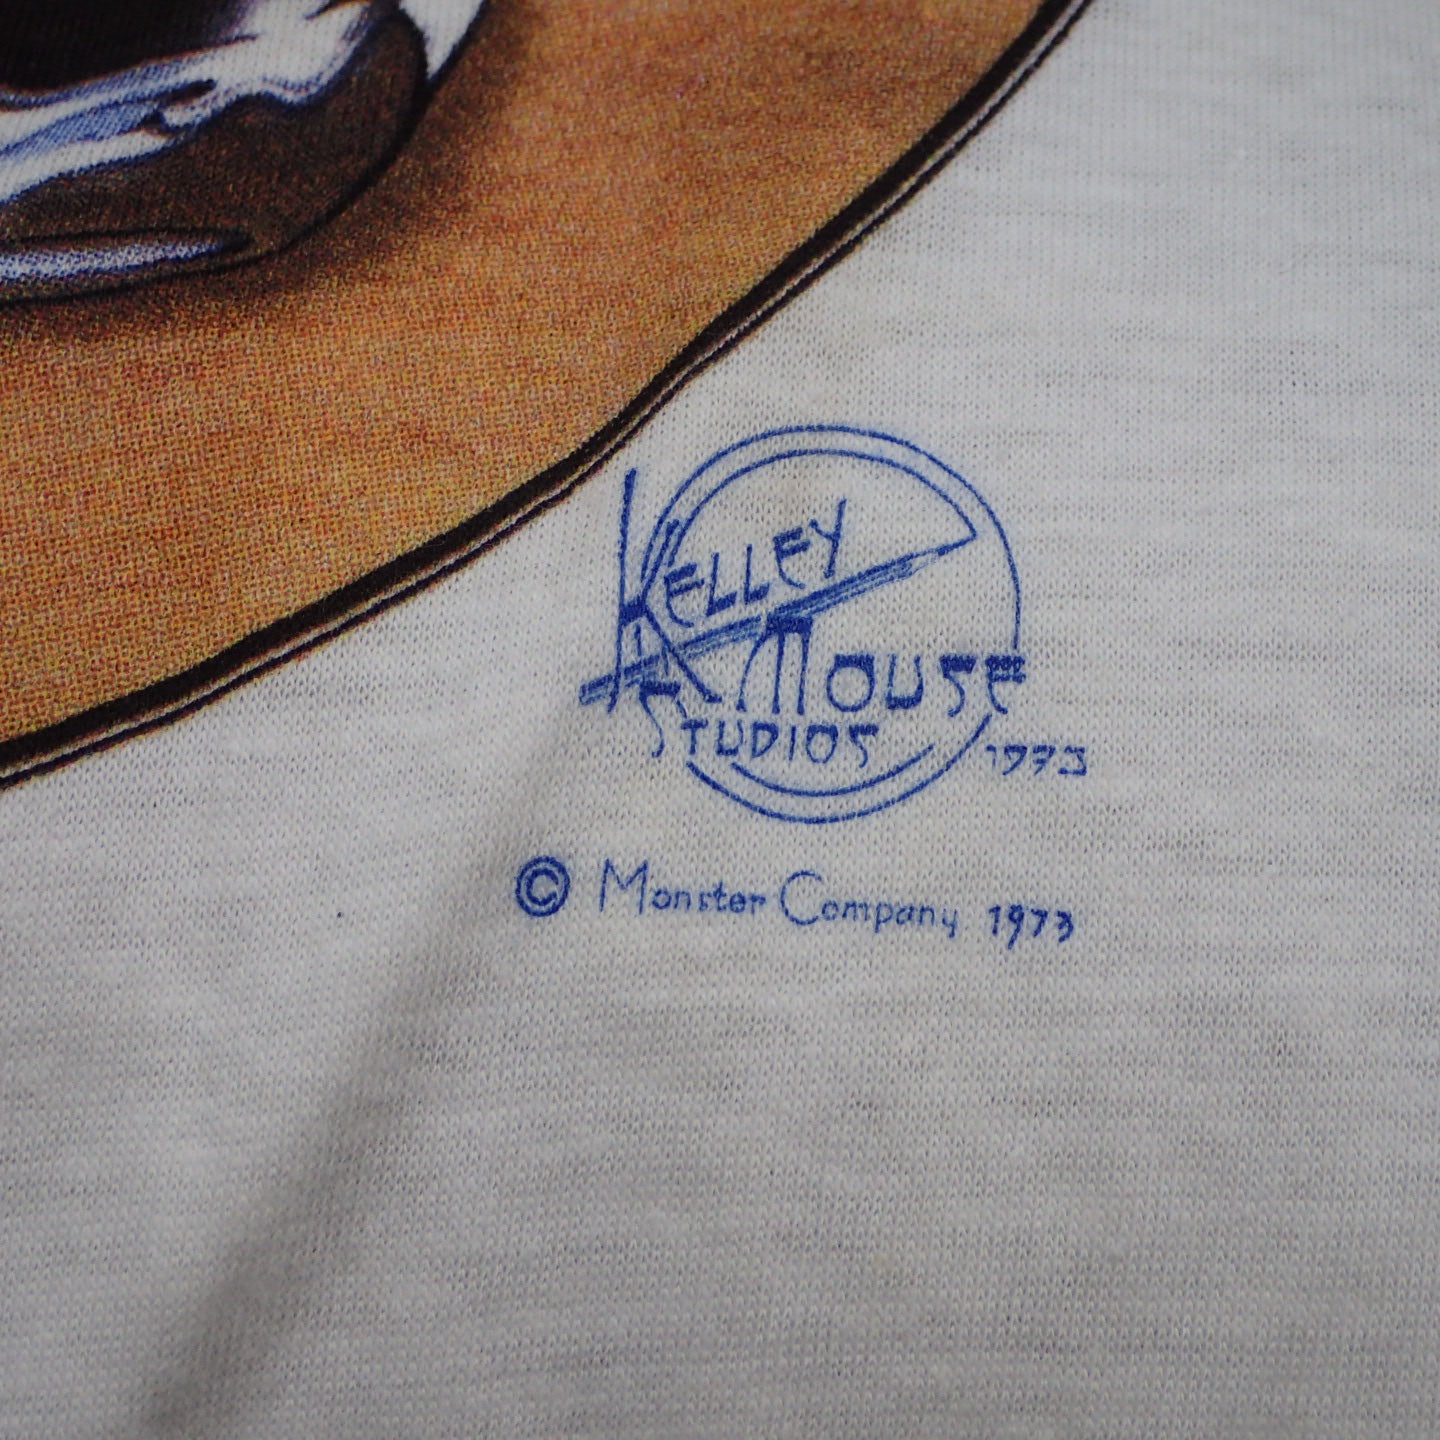 70s KELLEY MOUSE STUDIOS T-shirt "MERC tee"